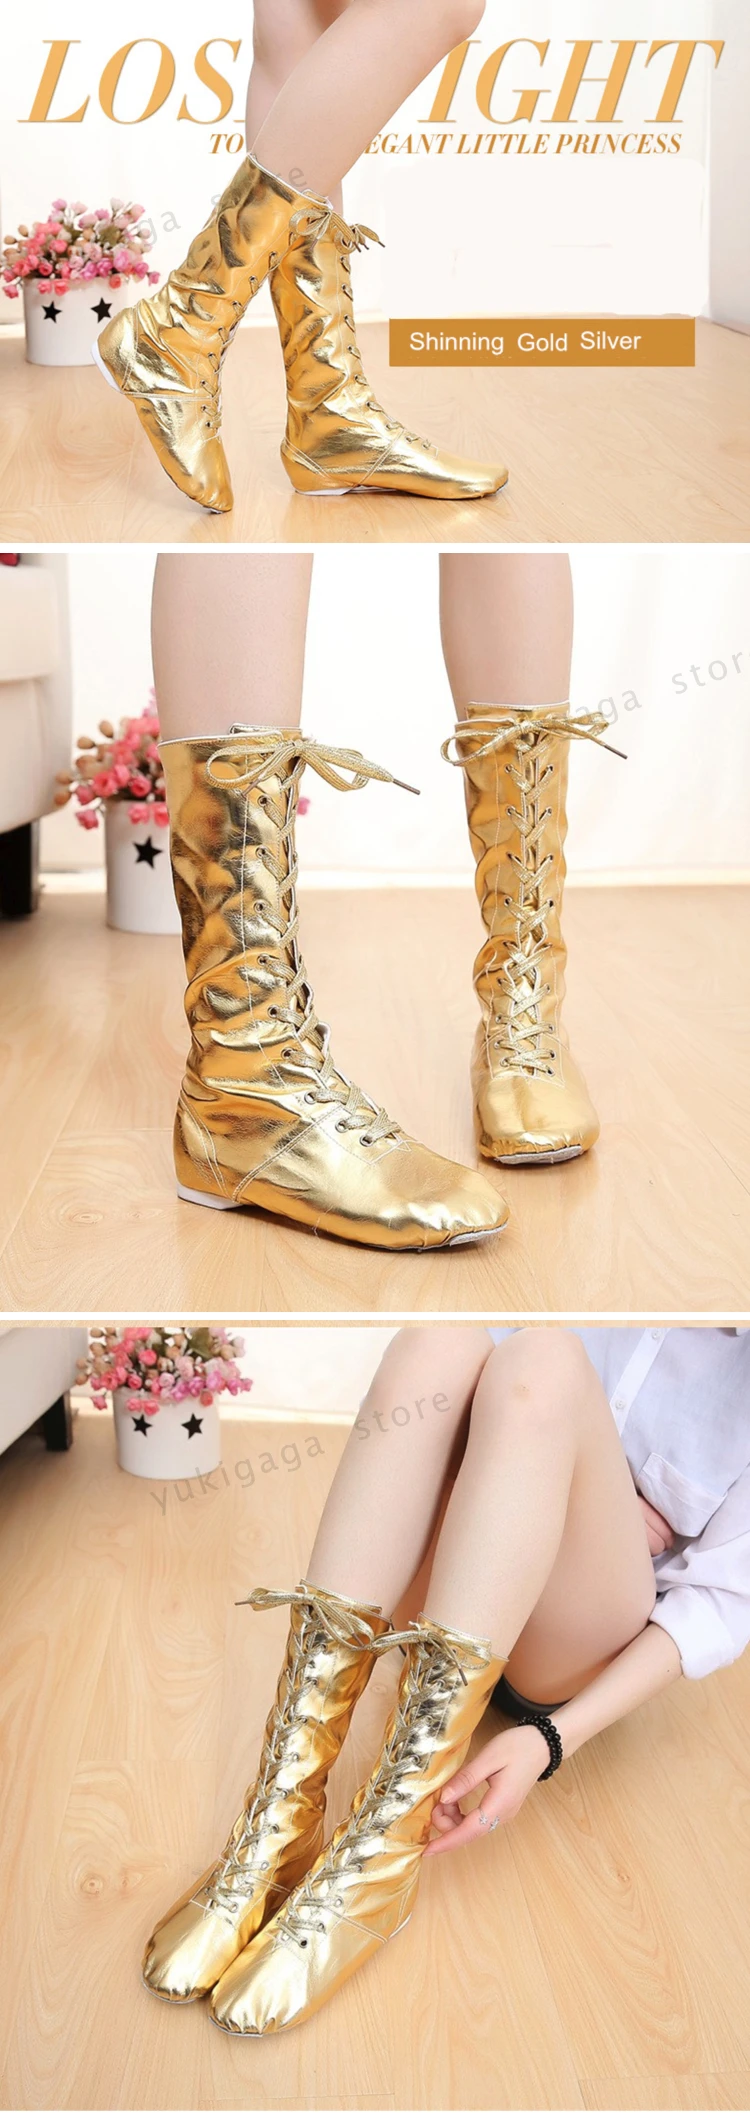 Tiejian/парусиновые детские танцевальные сапоги из искусственной кожи; обувь для джазовых танцев; высокие сапоги на шнуровке; цвет черный, золотой, серебряный; обувь для выступлений для девочек; o9a